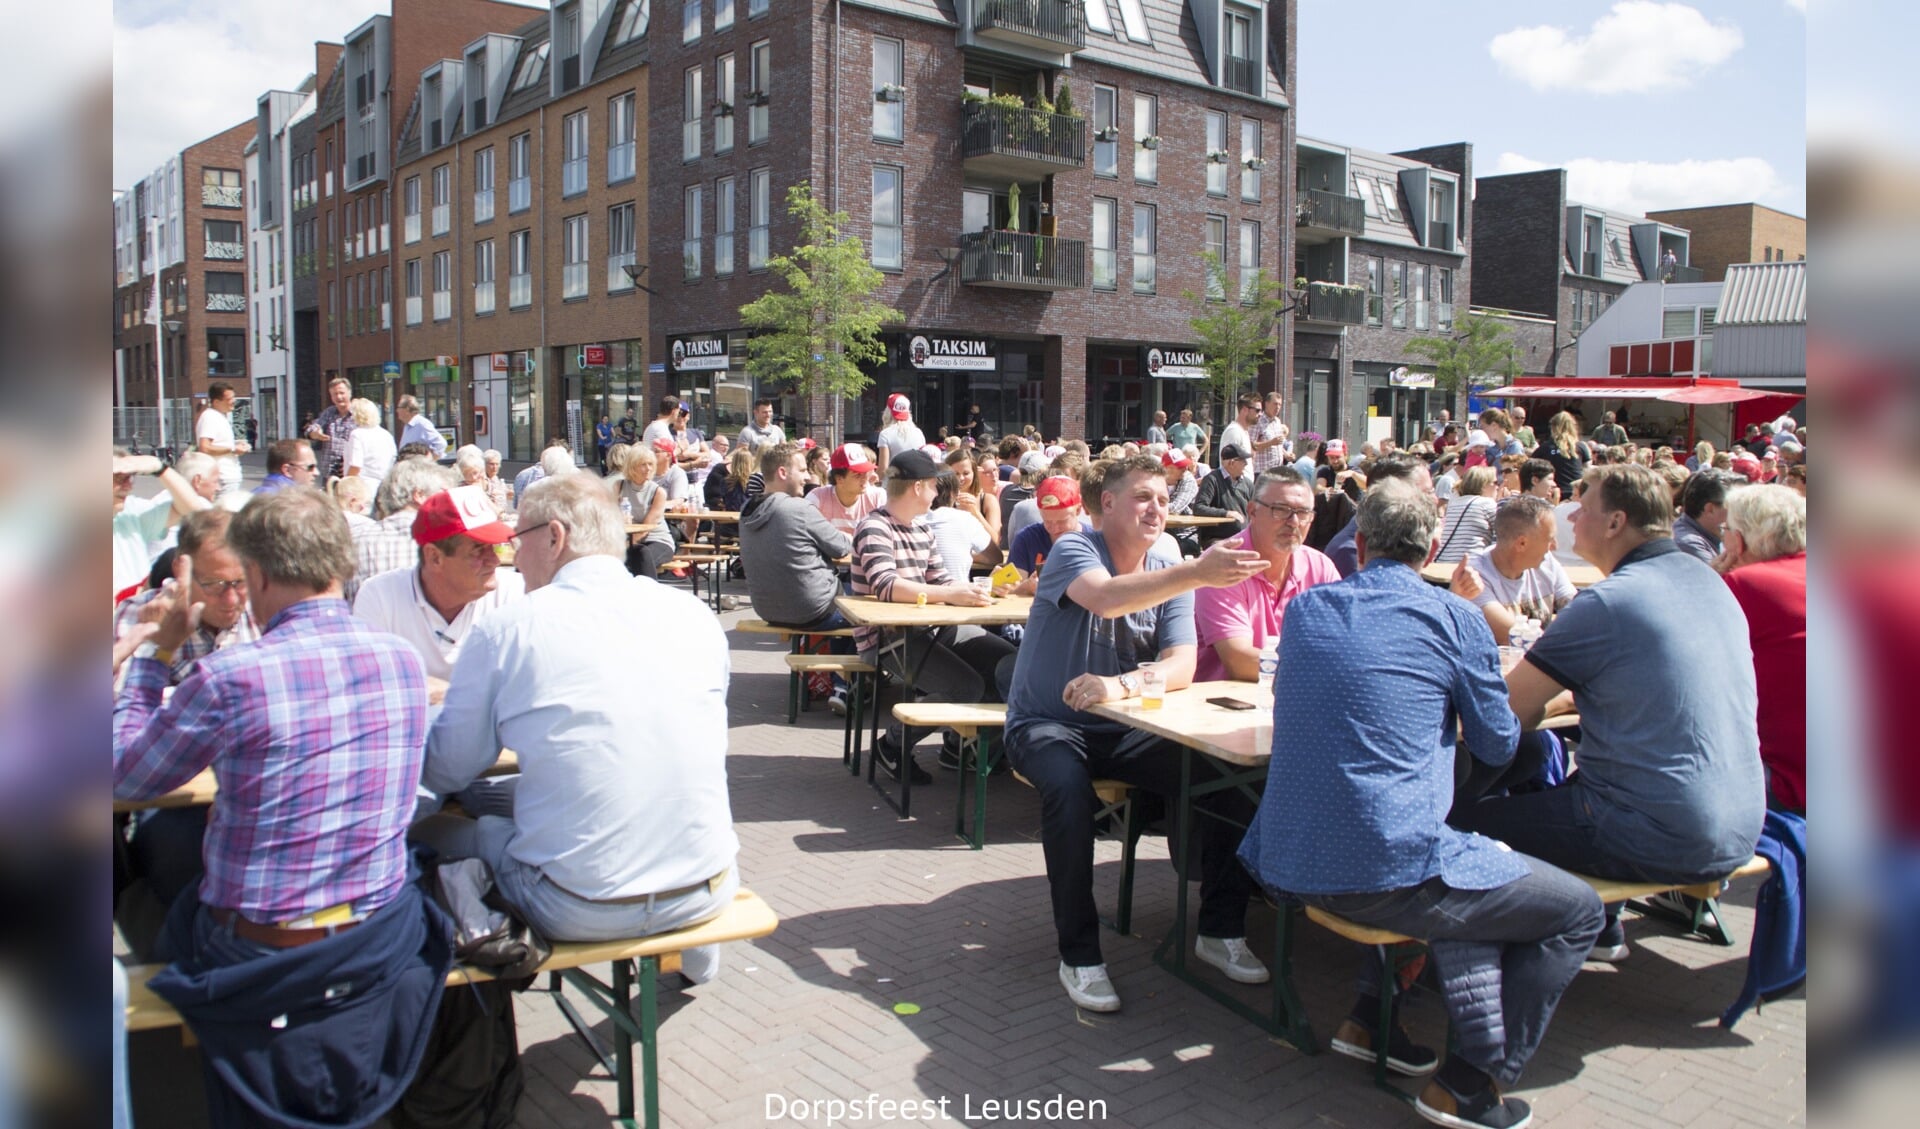 Het dorpsfeest sloeg vorig jaar zo aan, dat er deze zomer in Leusden een tweede editie gaat komen.